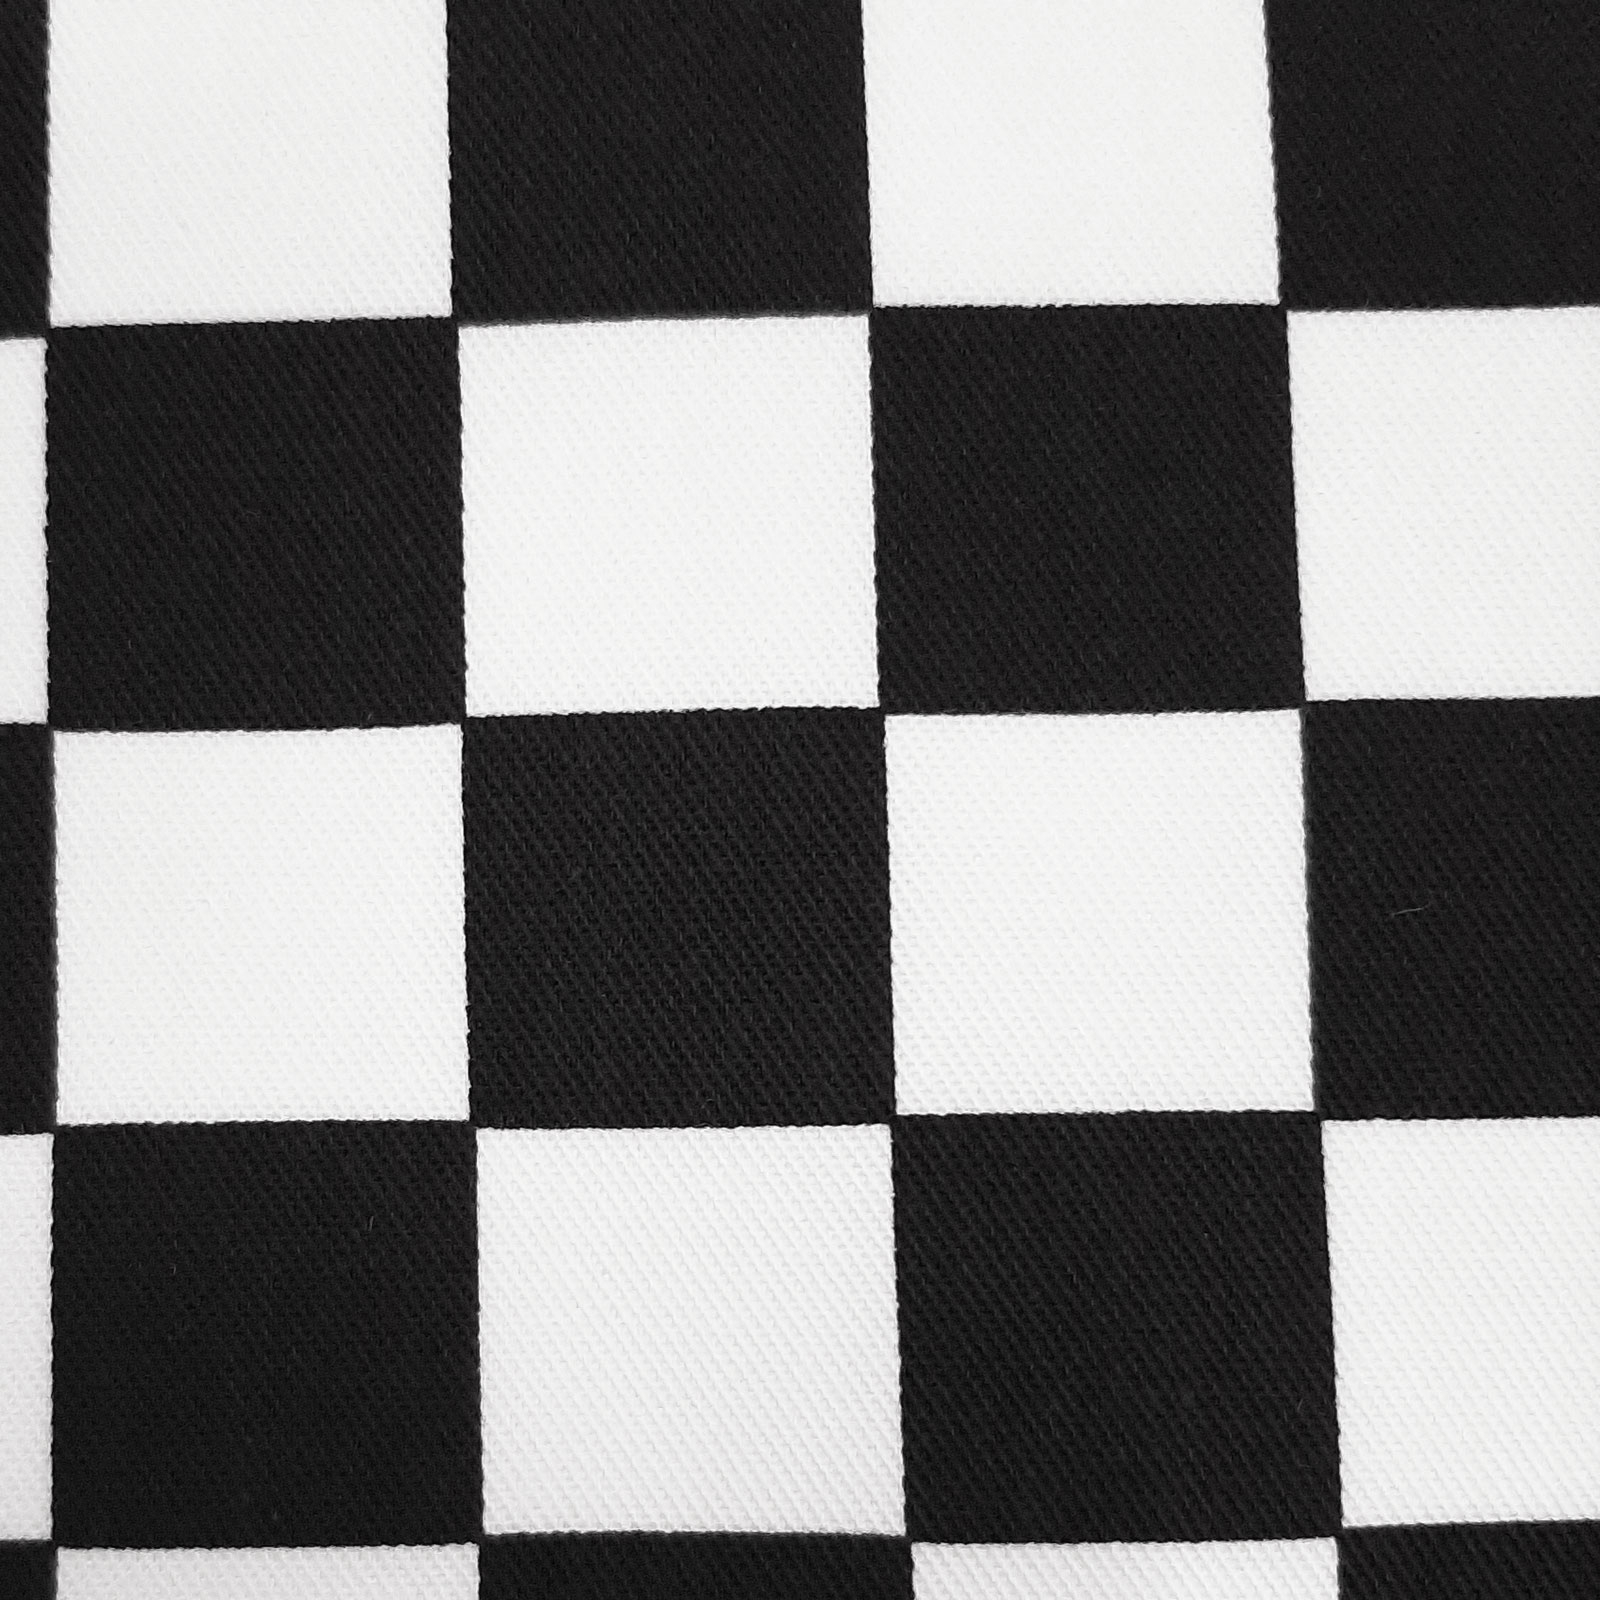 Cuadro - Tela estampada a cuadros - blanco y negro